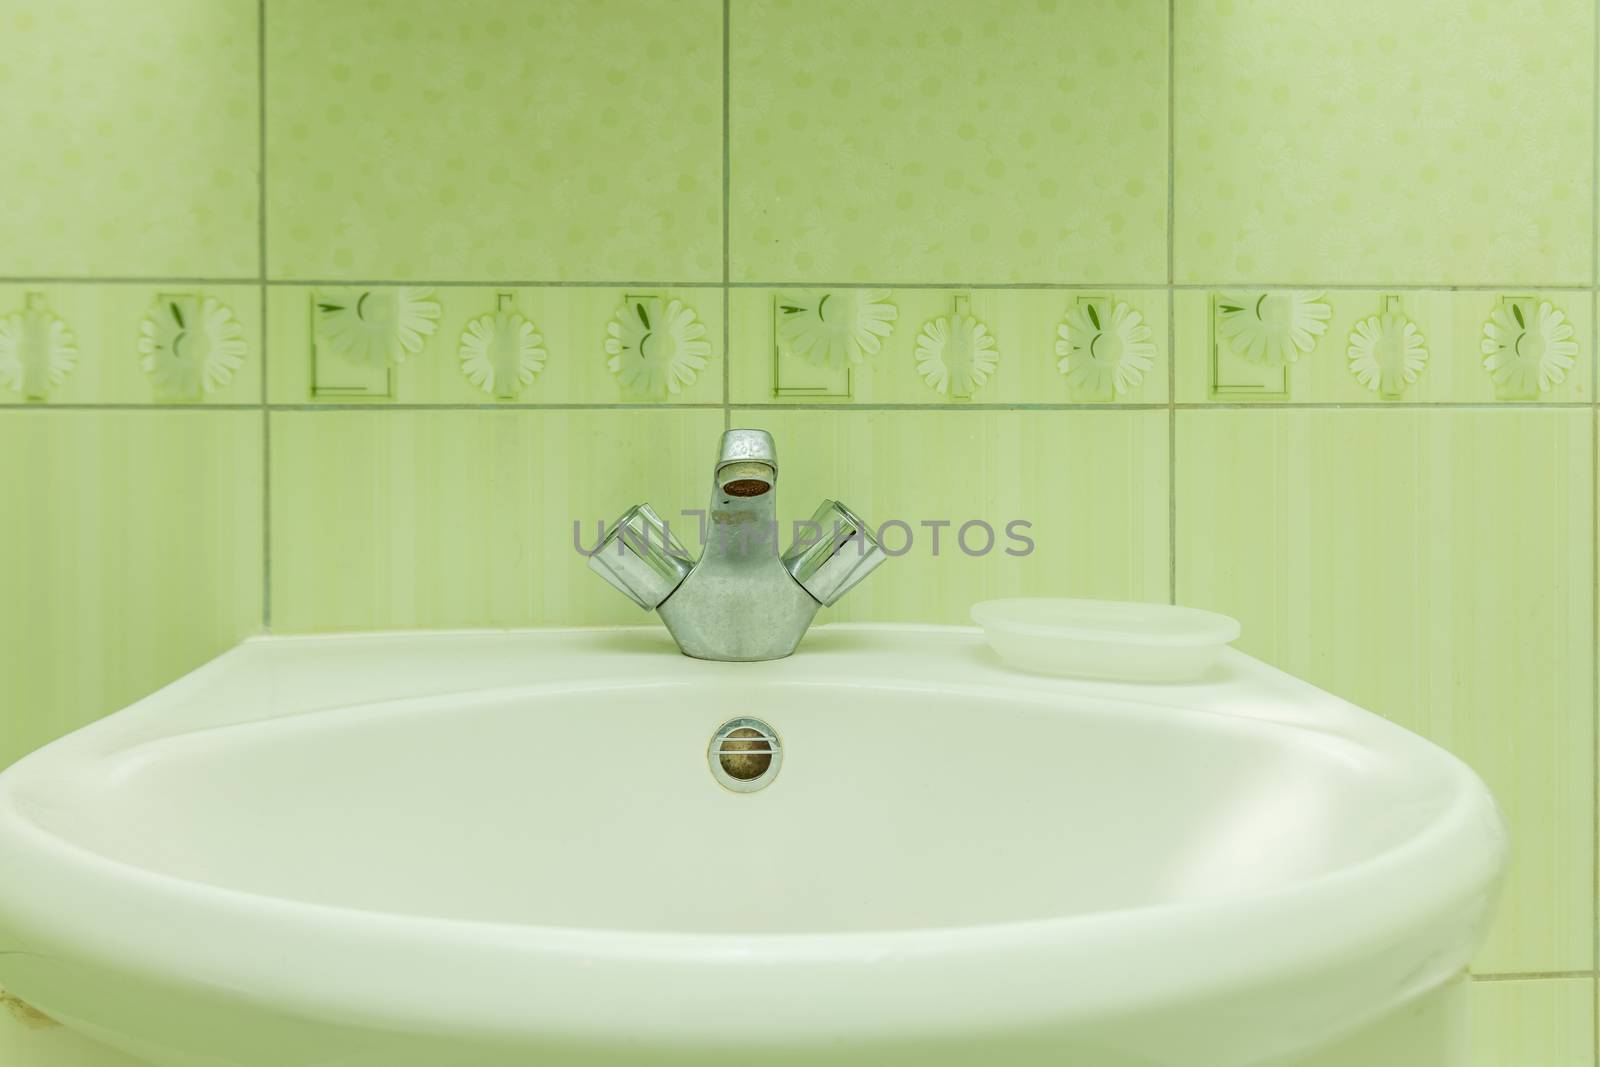 Faucet in bathroom by olga_sweet